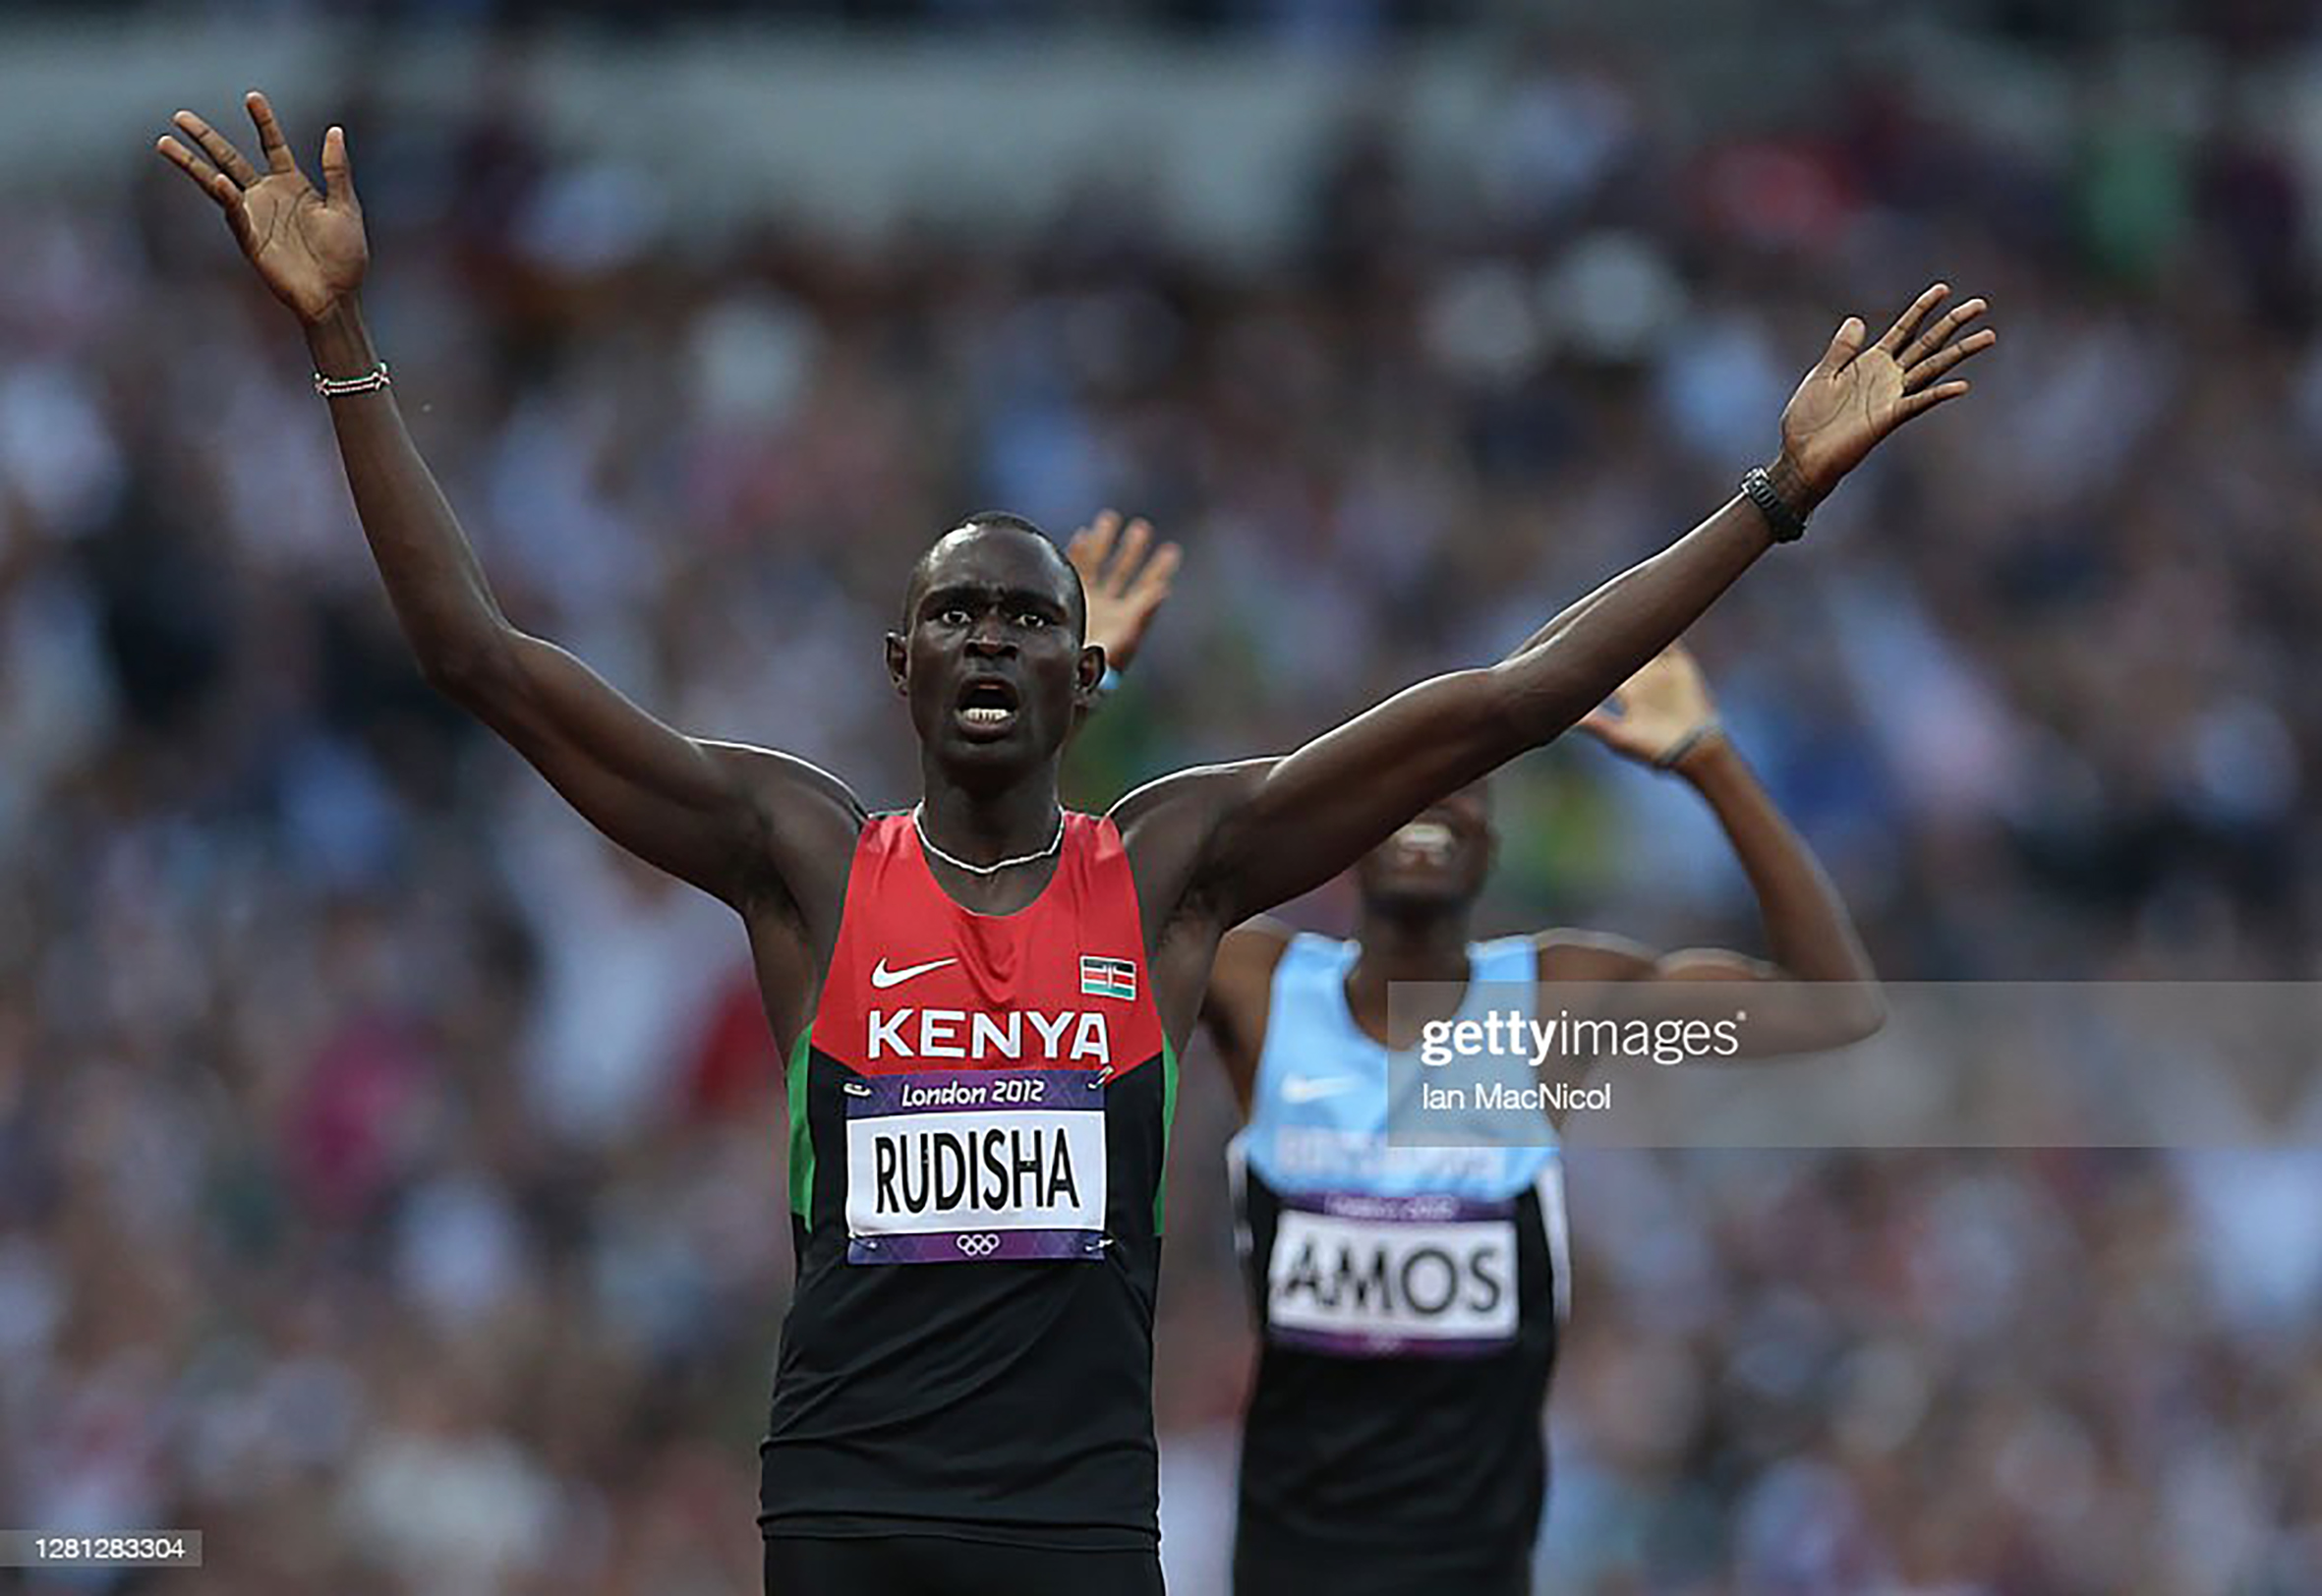 Olimpijske igre, London 2012. - 9. avgust - Dejvid Rudiša (Kenija), pobednik trke na 800m, slavlje zlatne medalje i obaranja svetskog rekorda;   Foto: Ian MacNicol/Getty Images